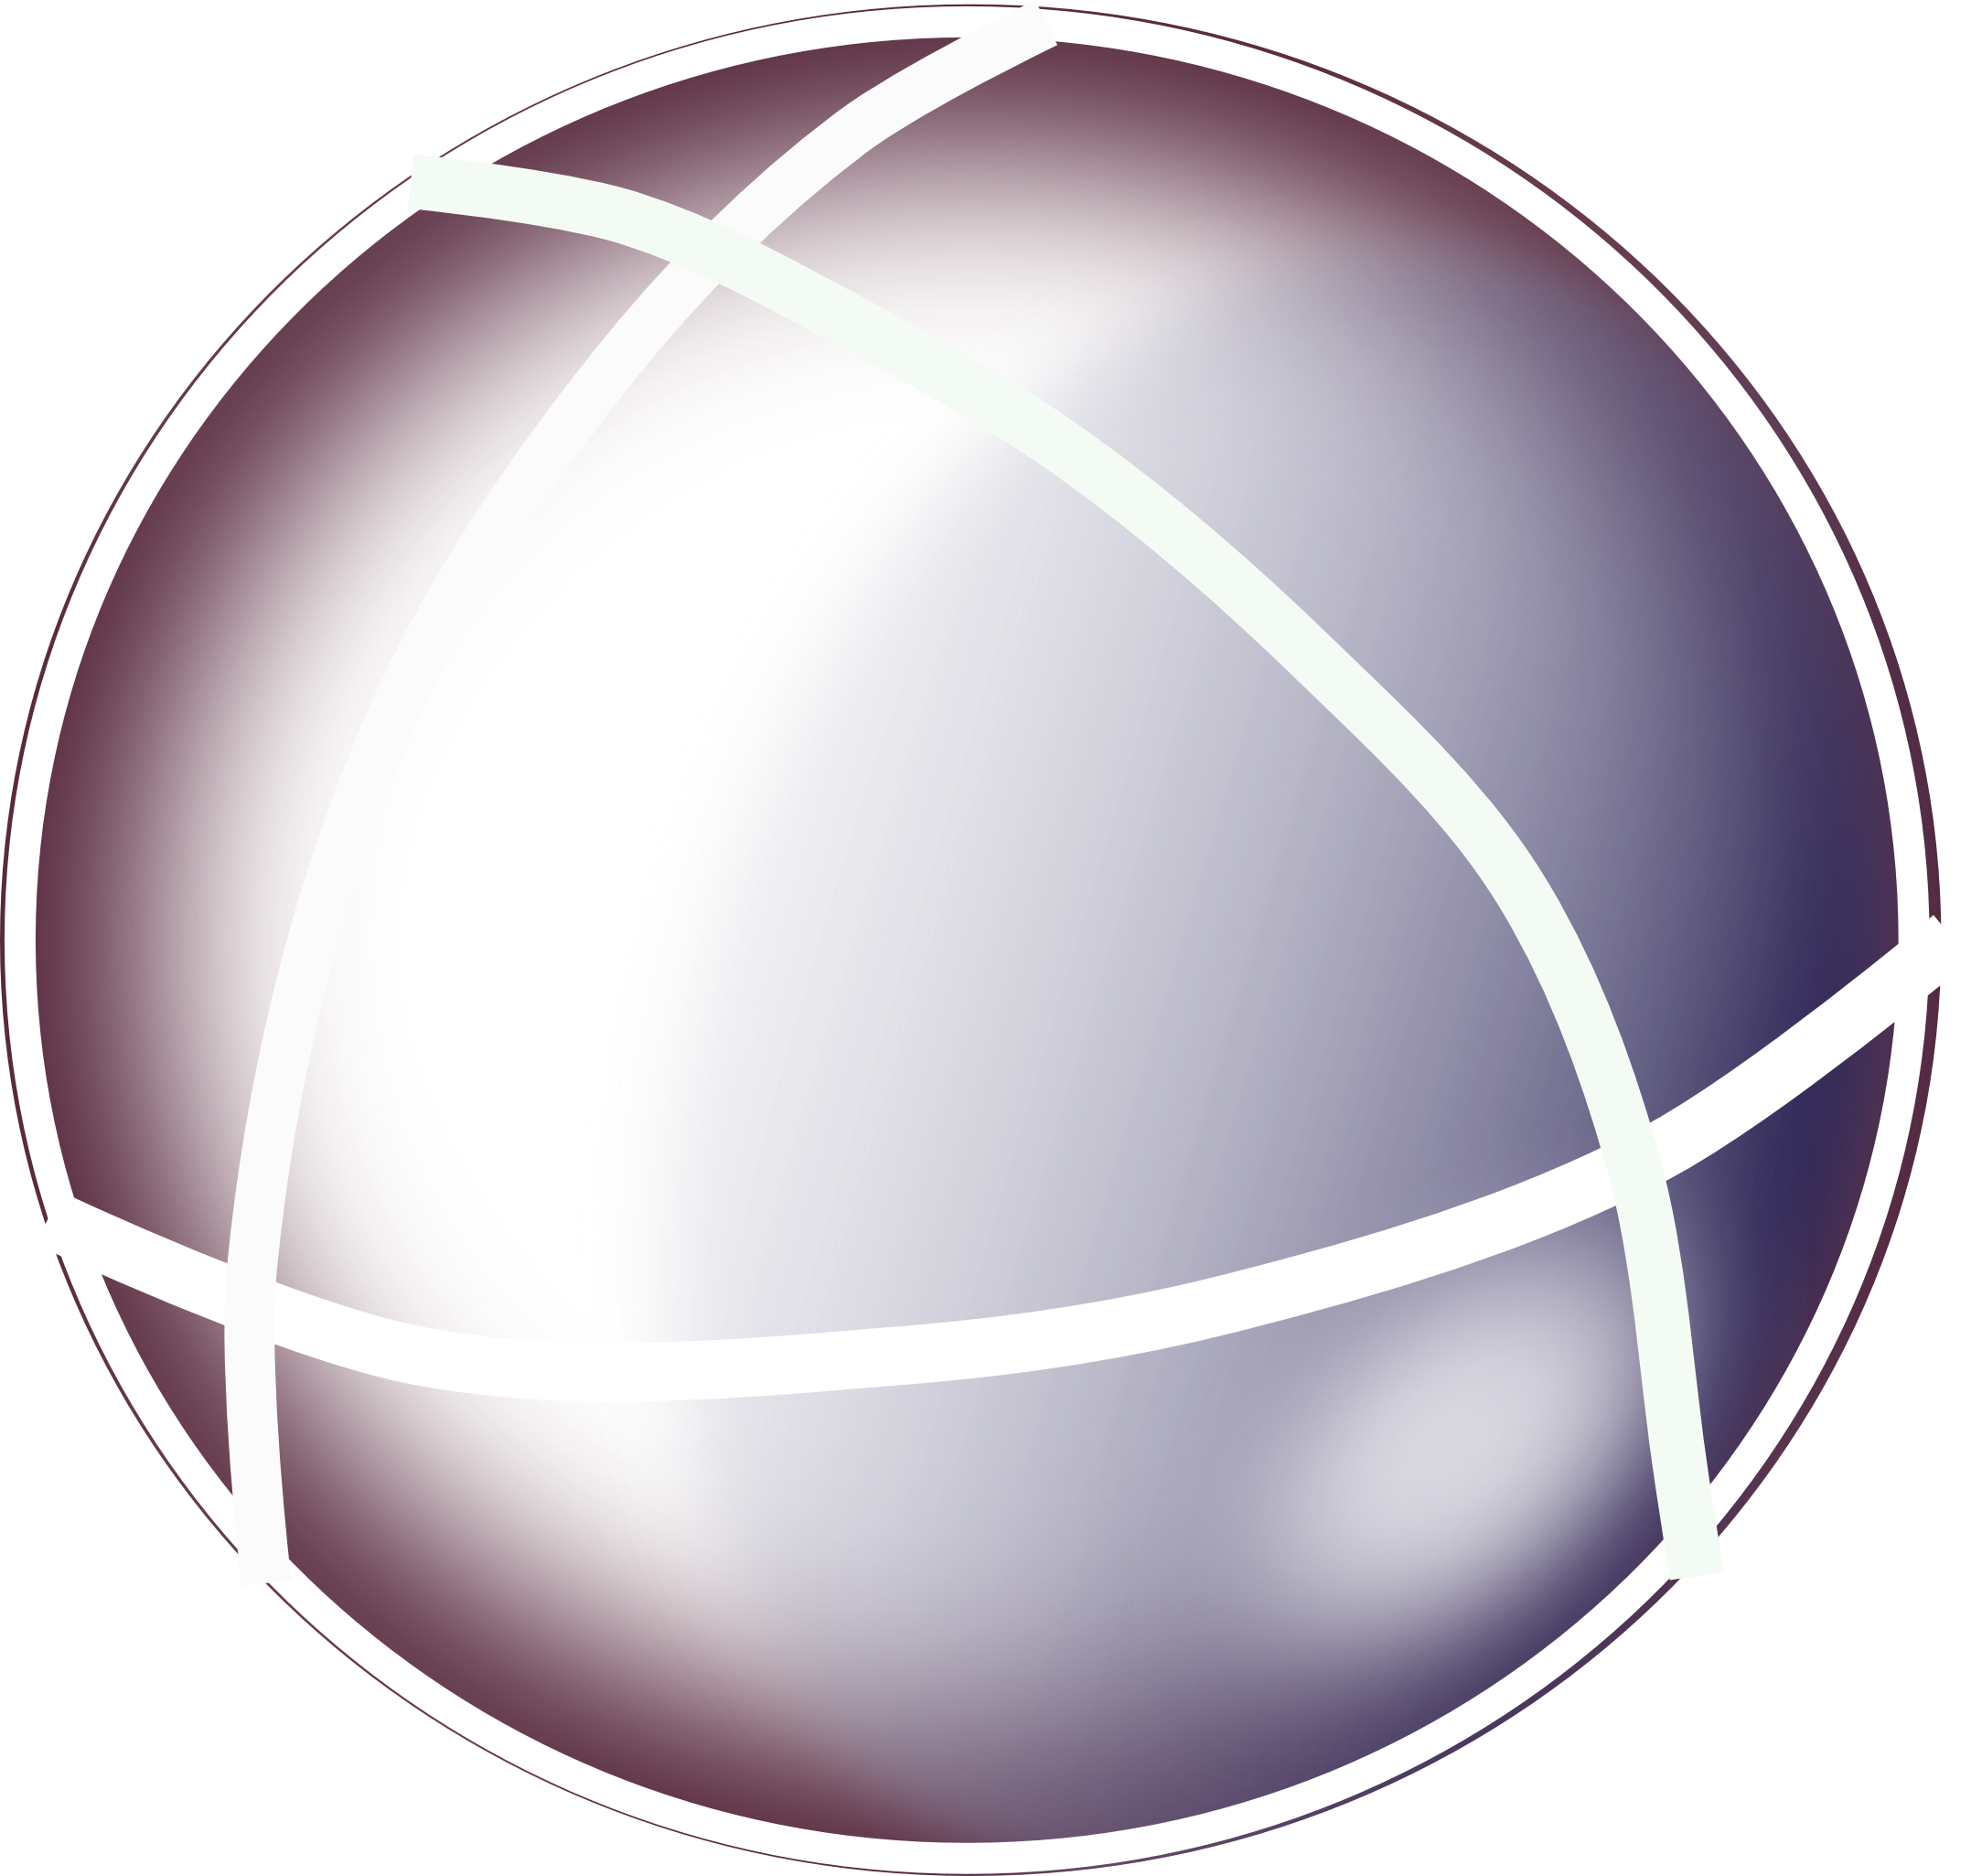 sfera